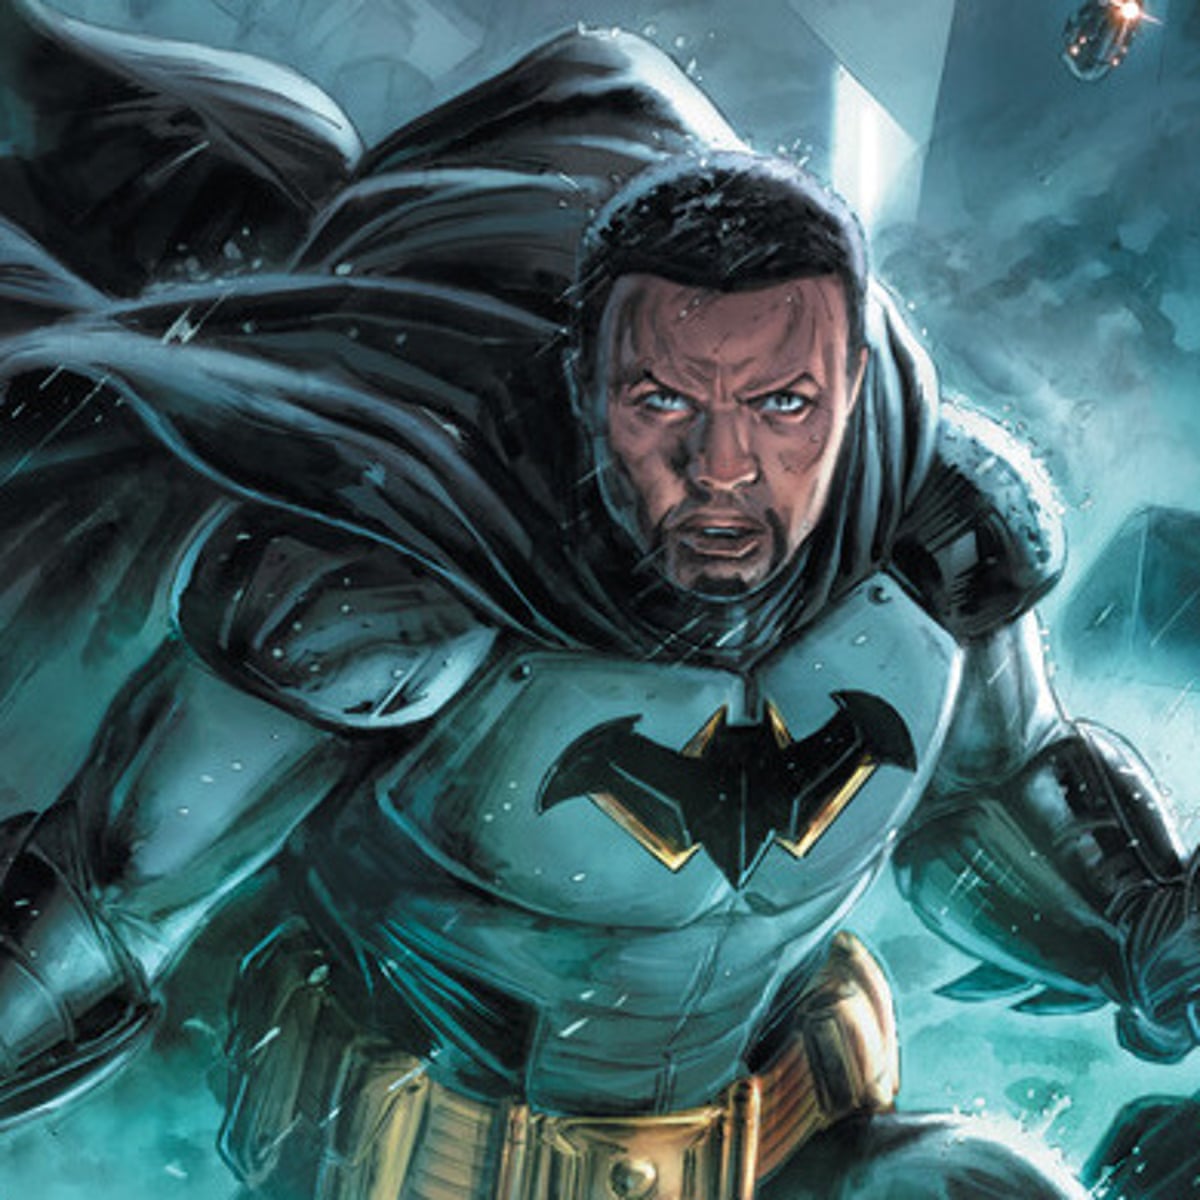 New Batman will be black, DC Comics announces | Comics and graphic novels |  The Guardian